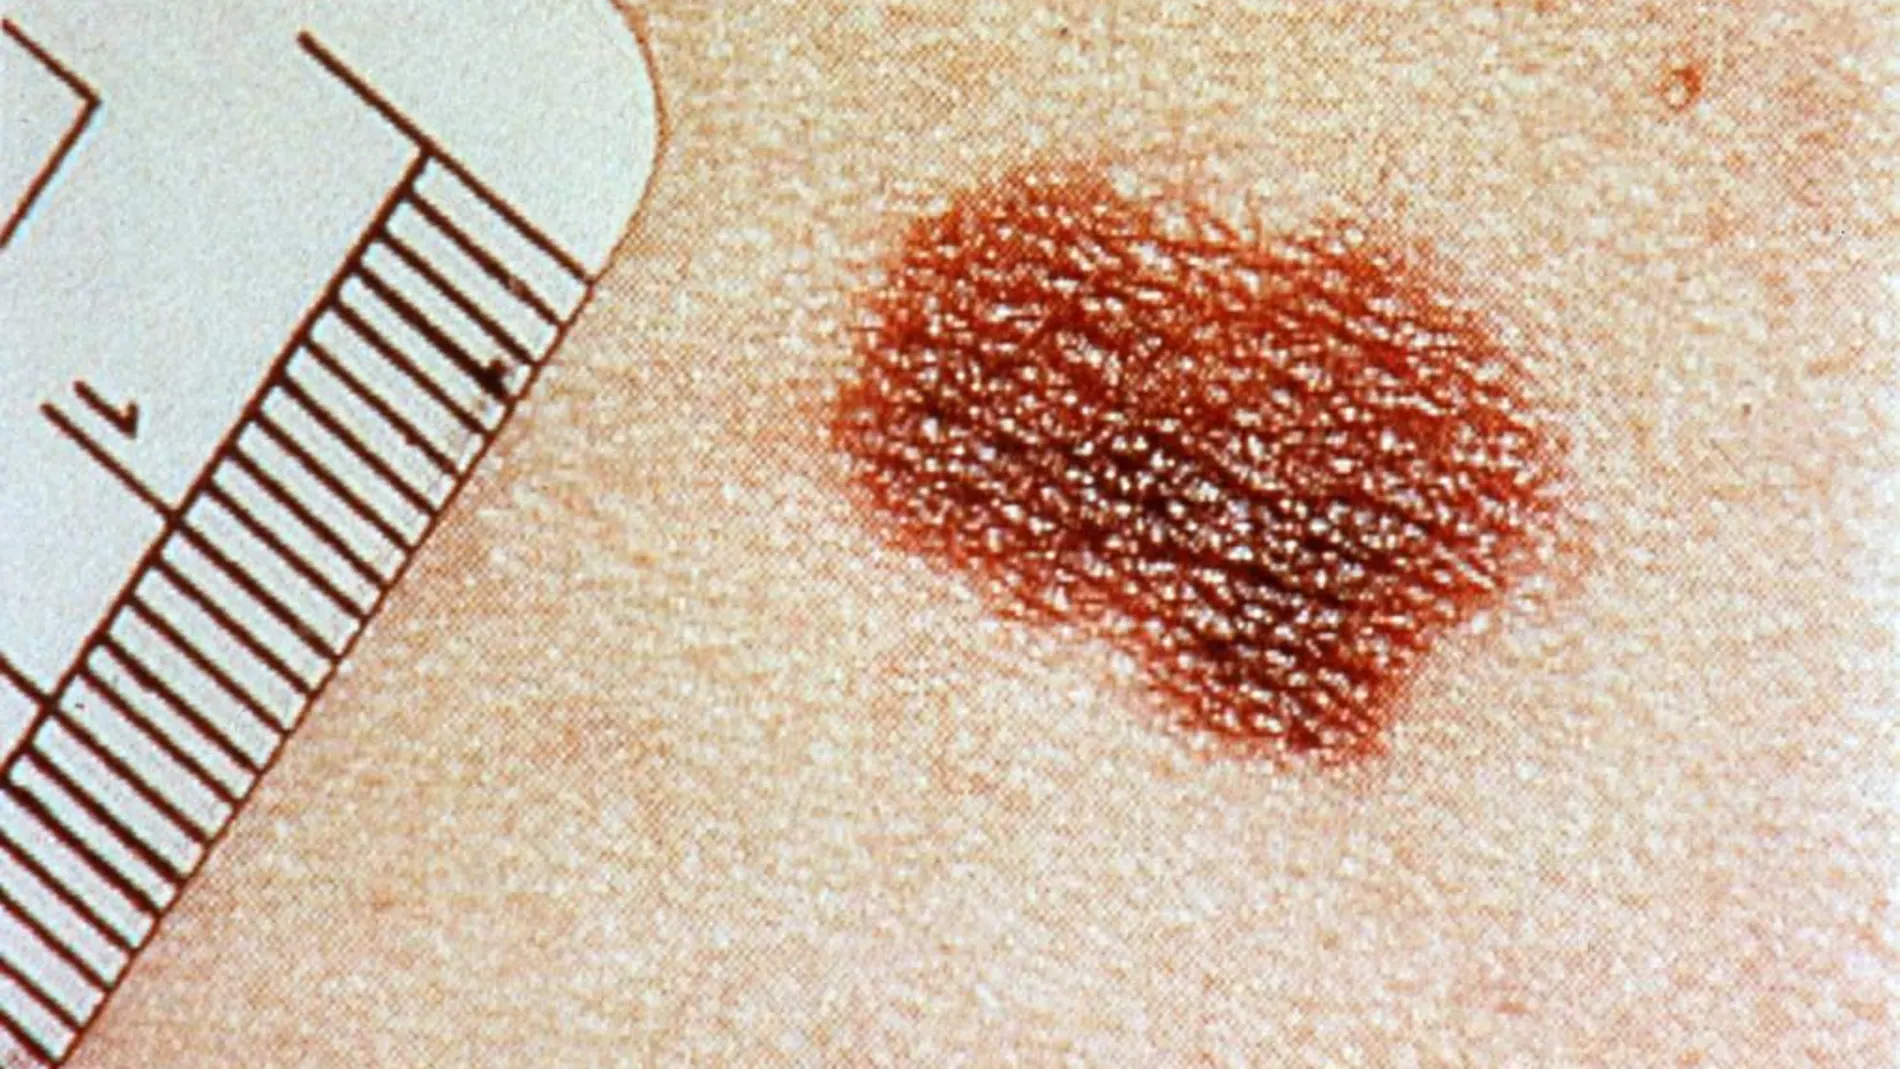 Fotografía de un melanoma en la piel